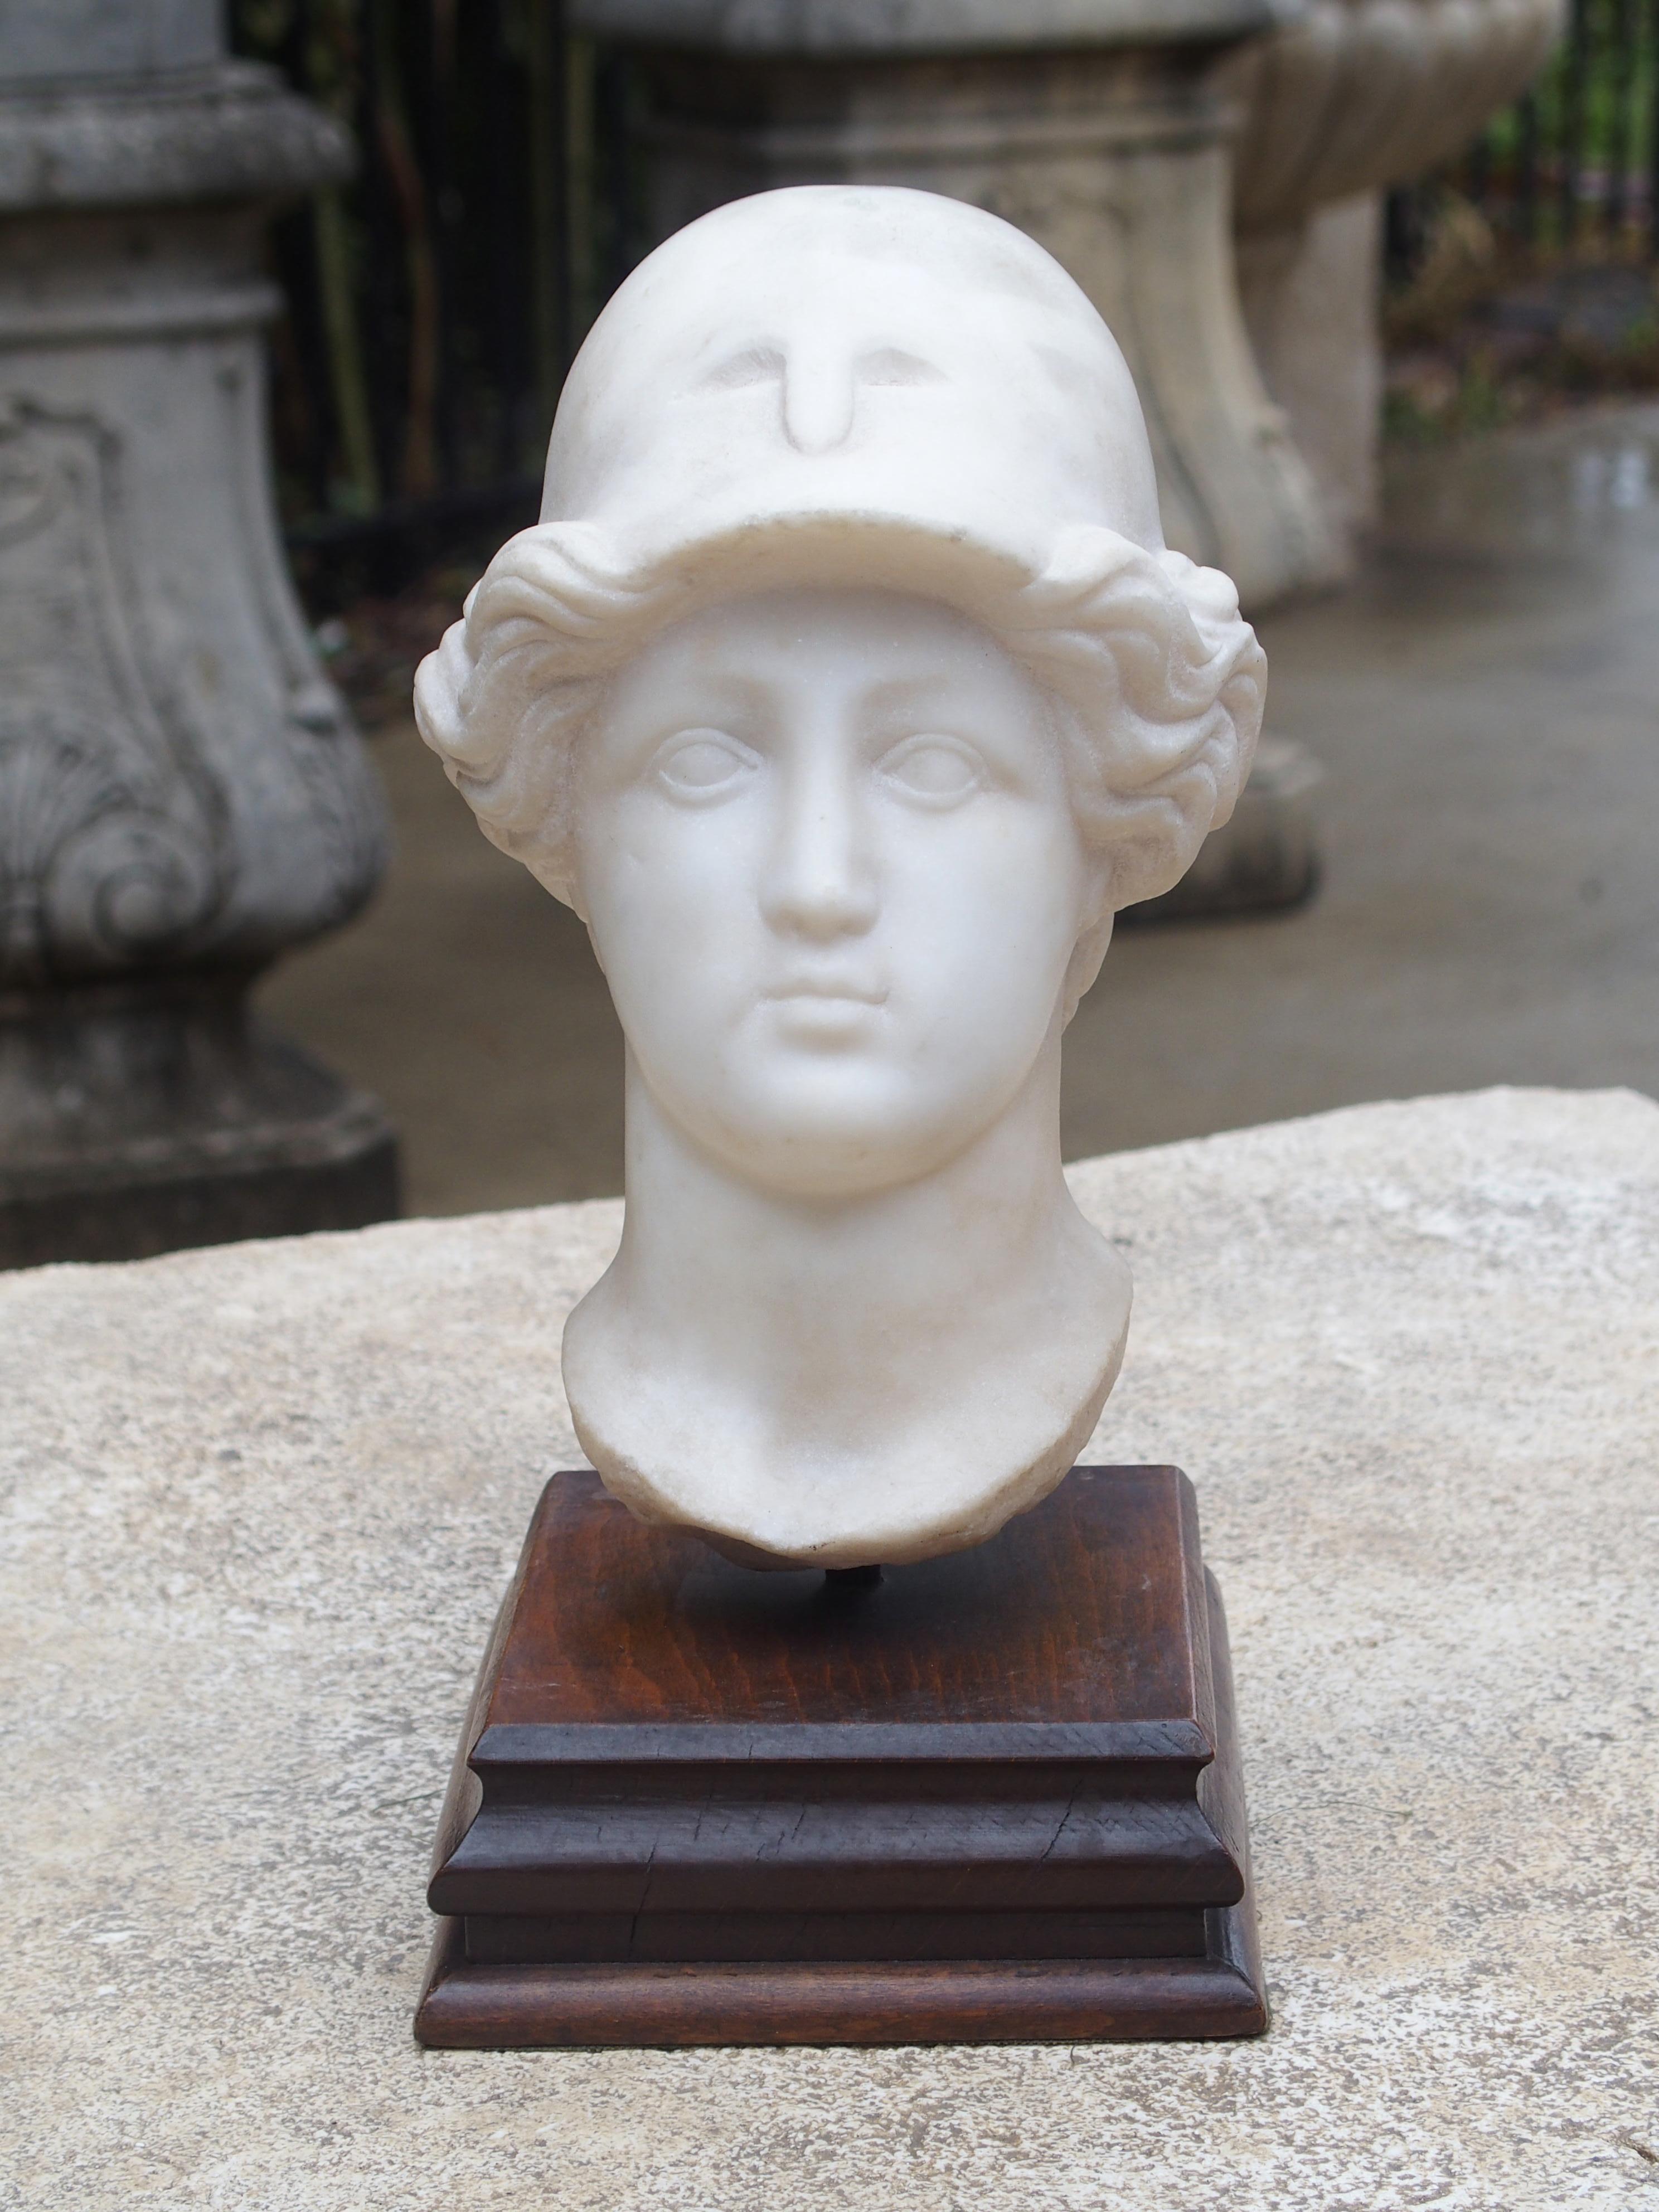 Dies ist ein antiker italienischer geschnitzter Marmorkopf eines jungen Mannes mit einem griechisch-römischen Helm auf einem Holzsockel. Der Bildhauer hat sein Antlitz geschickt als großäugige Unschuld dargestellt. Der Marmorkopf ruht auf dem